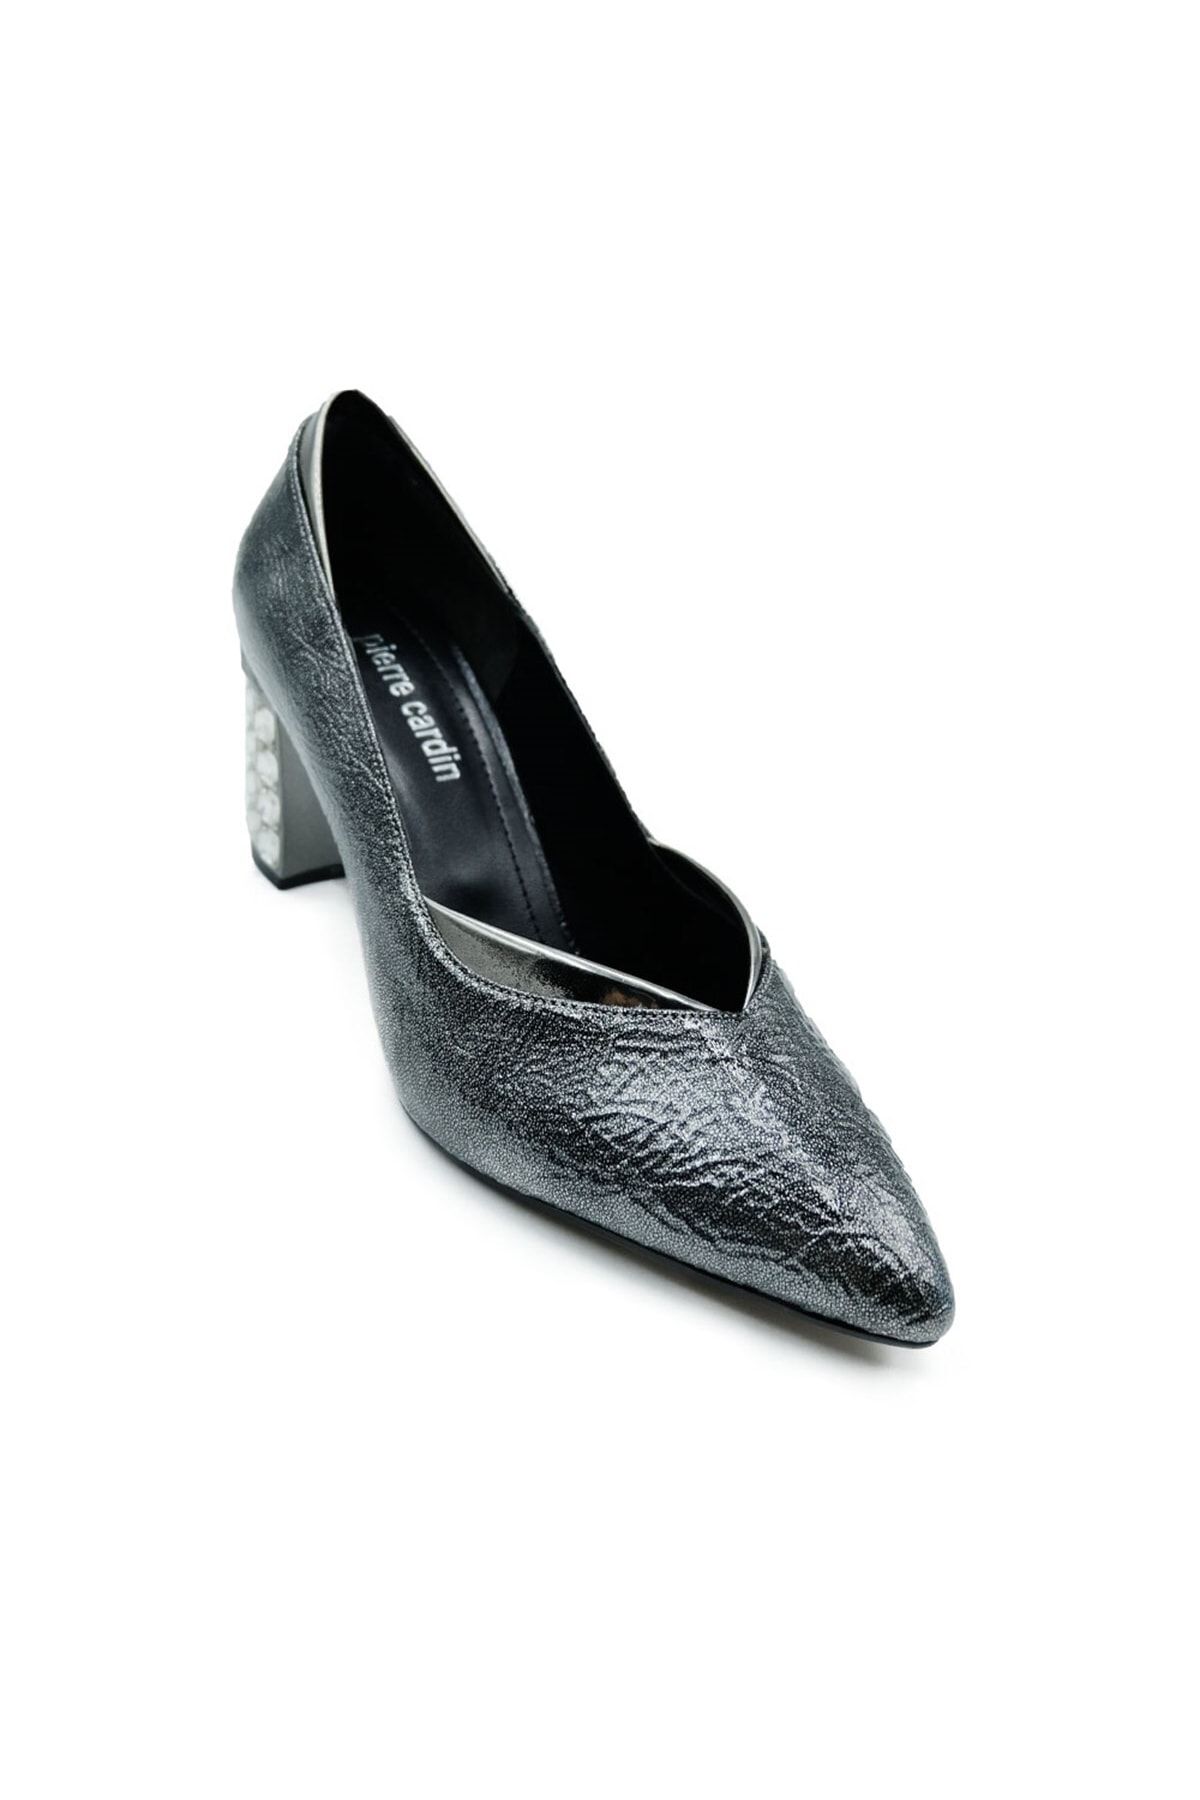 Pierre Cardin Pc-52229 7,5 Cm Taşlı Topuklu Kadın Stiletto Ayakkabı